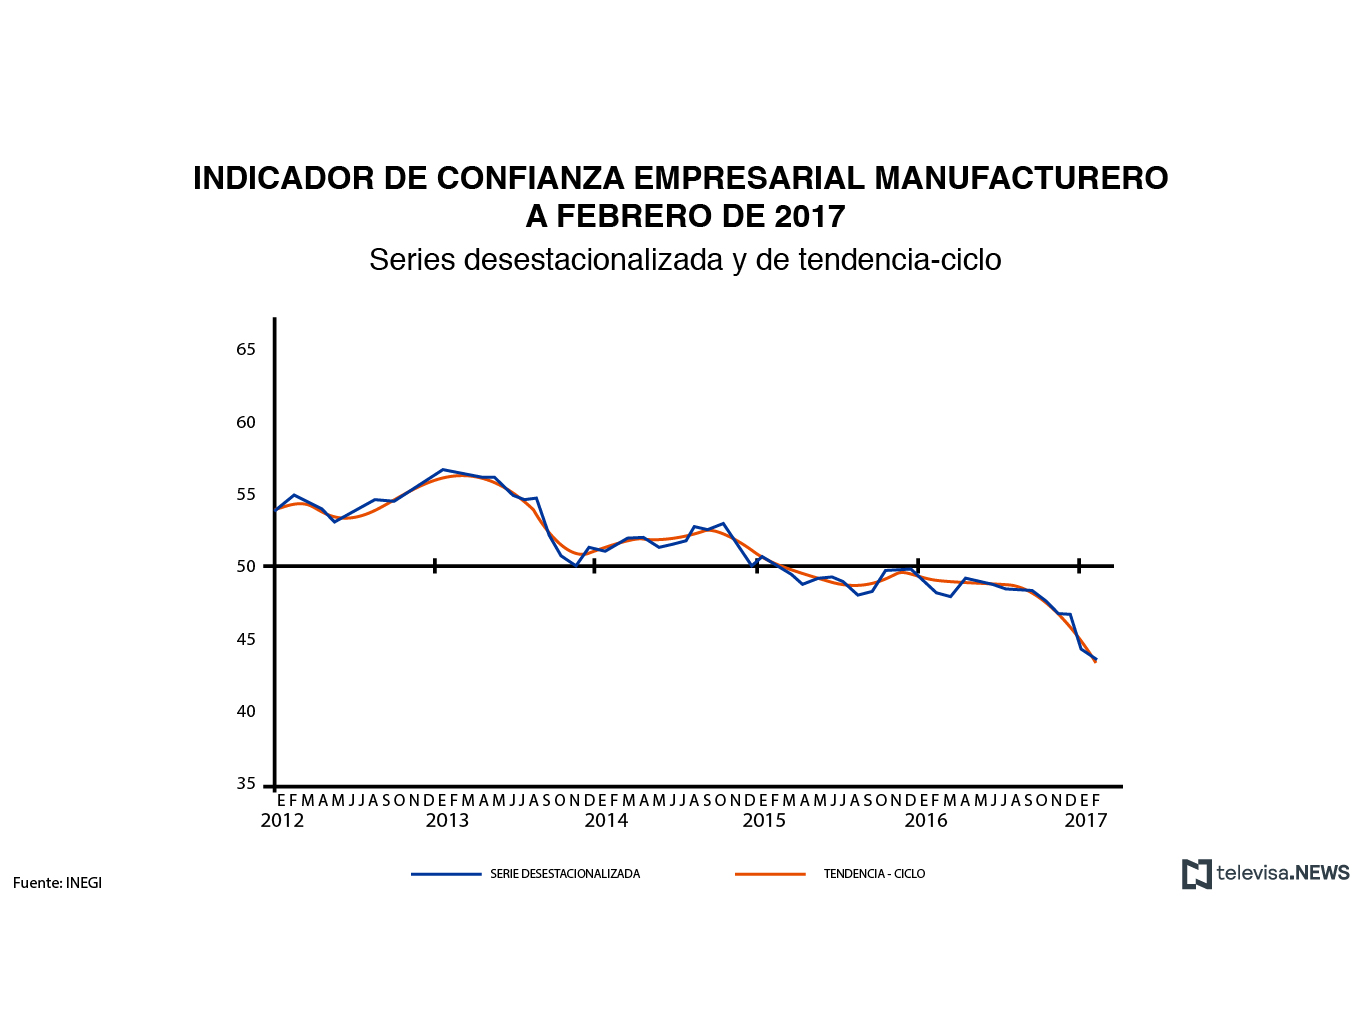 Los componentes del indicador de confianza empresarial del INEGI se mostraron descensos mensuales